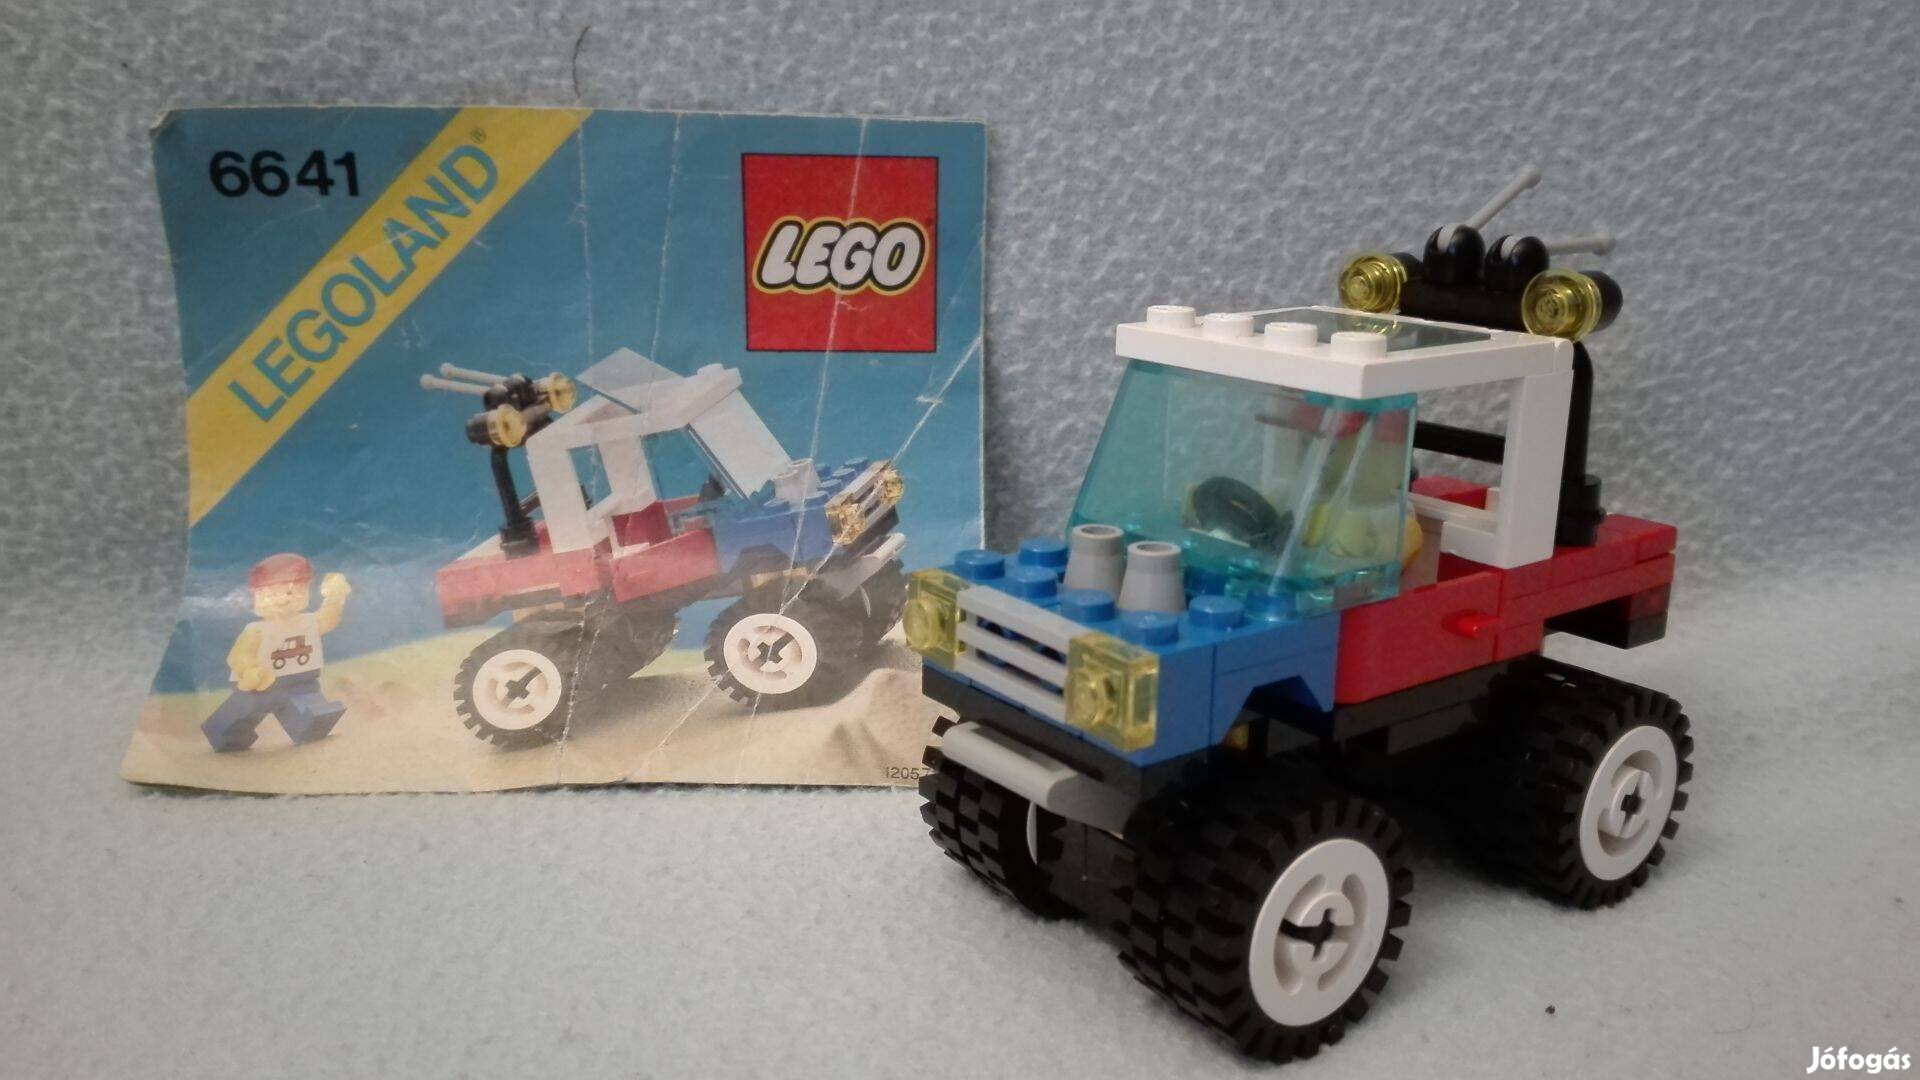 Lego 6641 legoland city